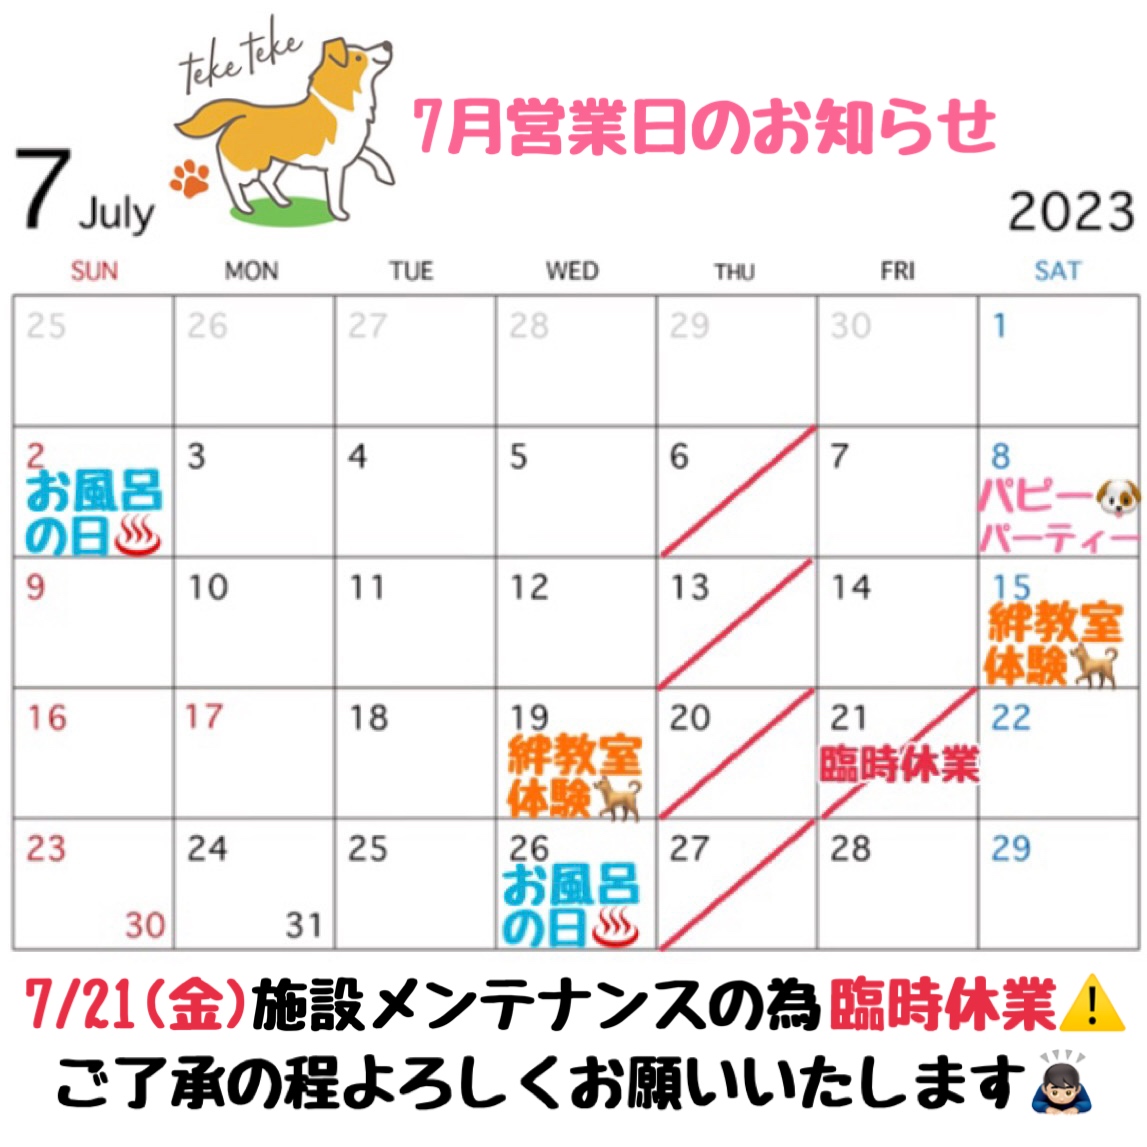 7月営業日カレンダーのお知らせです🗓